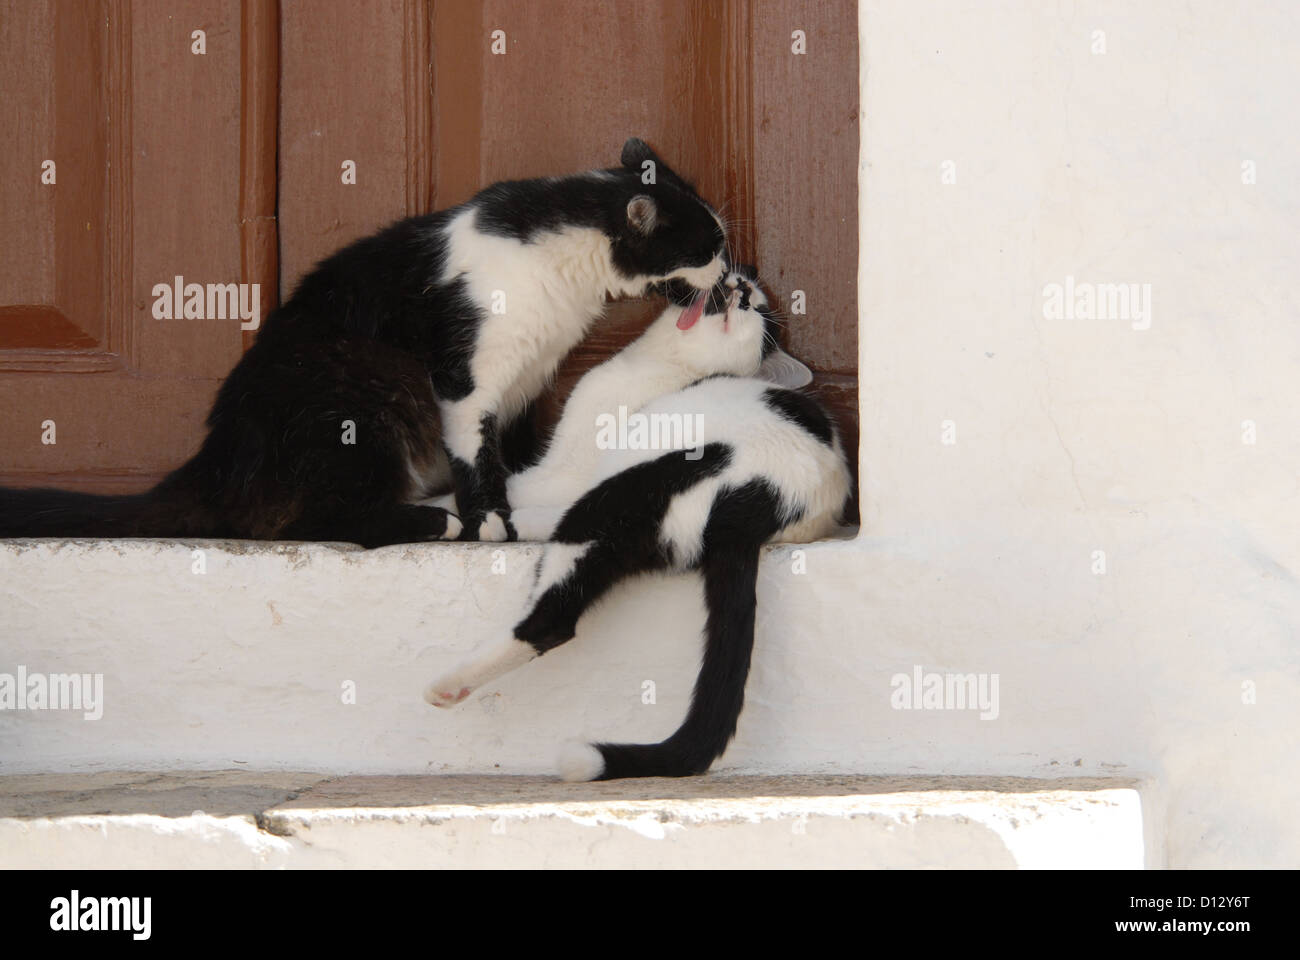 zwei Hauskatzen, Schwarz-Weiss, putzen sich gegenseitig zärtlich auf einer Türschwelle, Dodekanes, Griechenland, two cats, Black Stock Photo